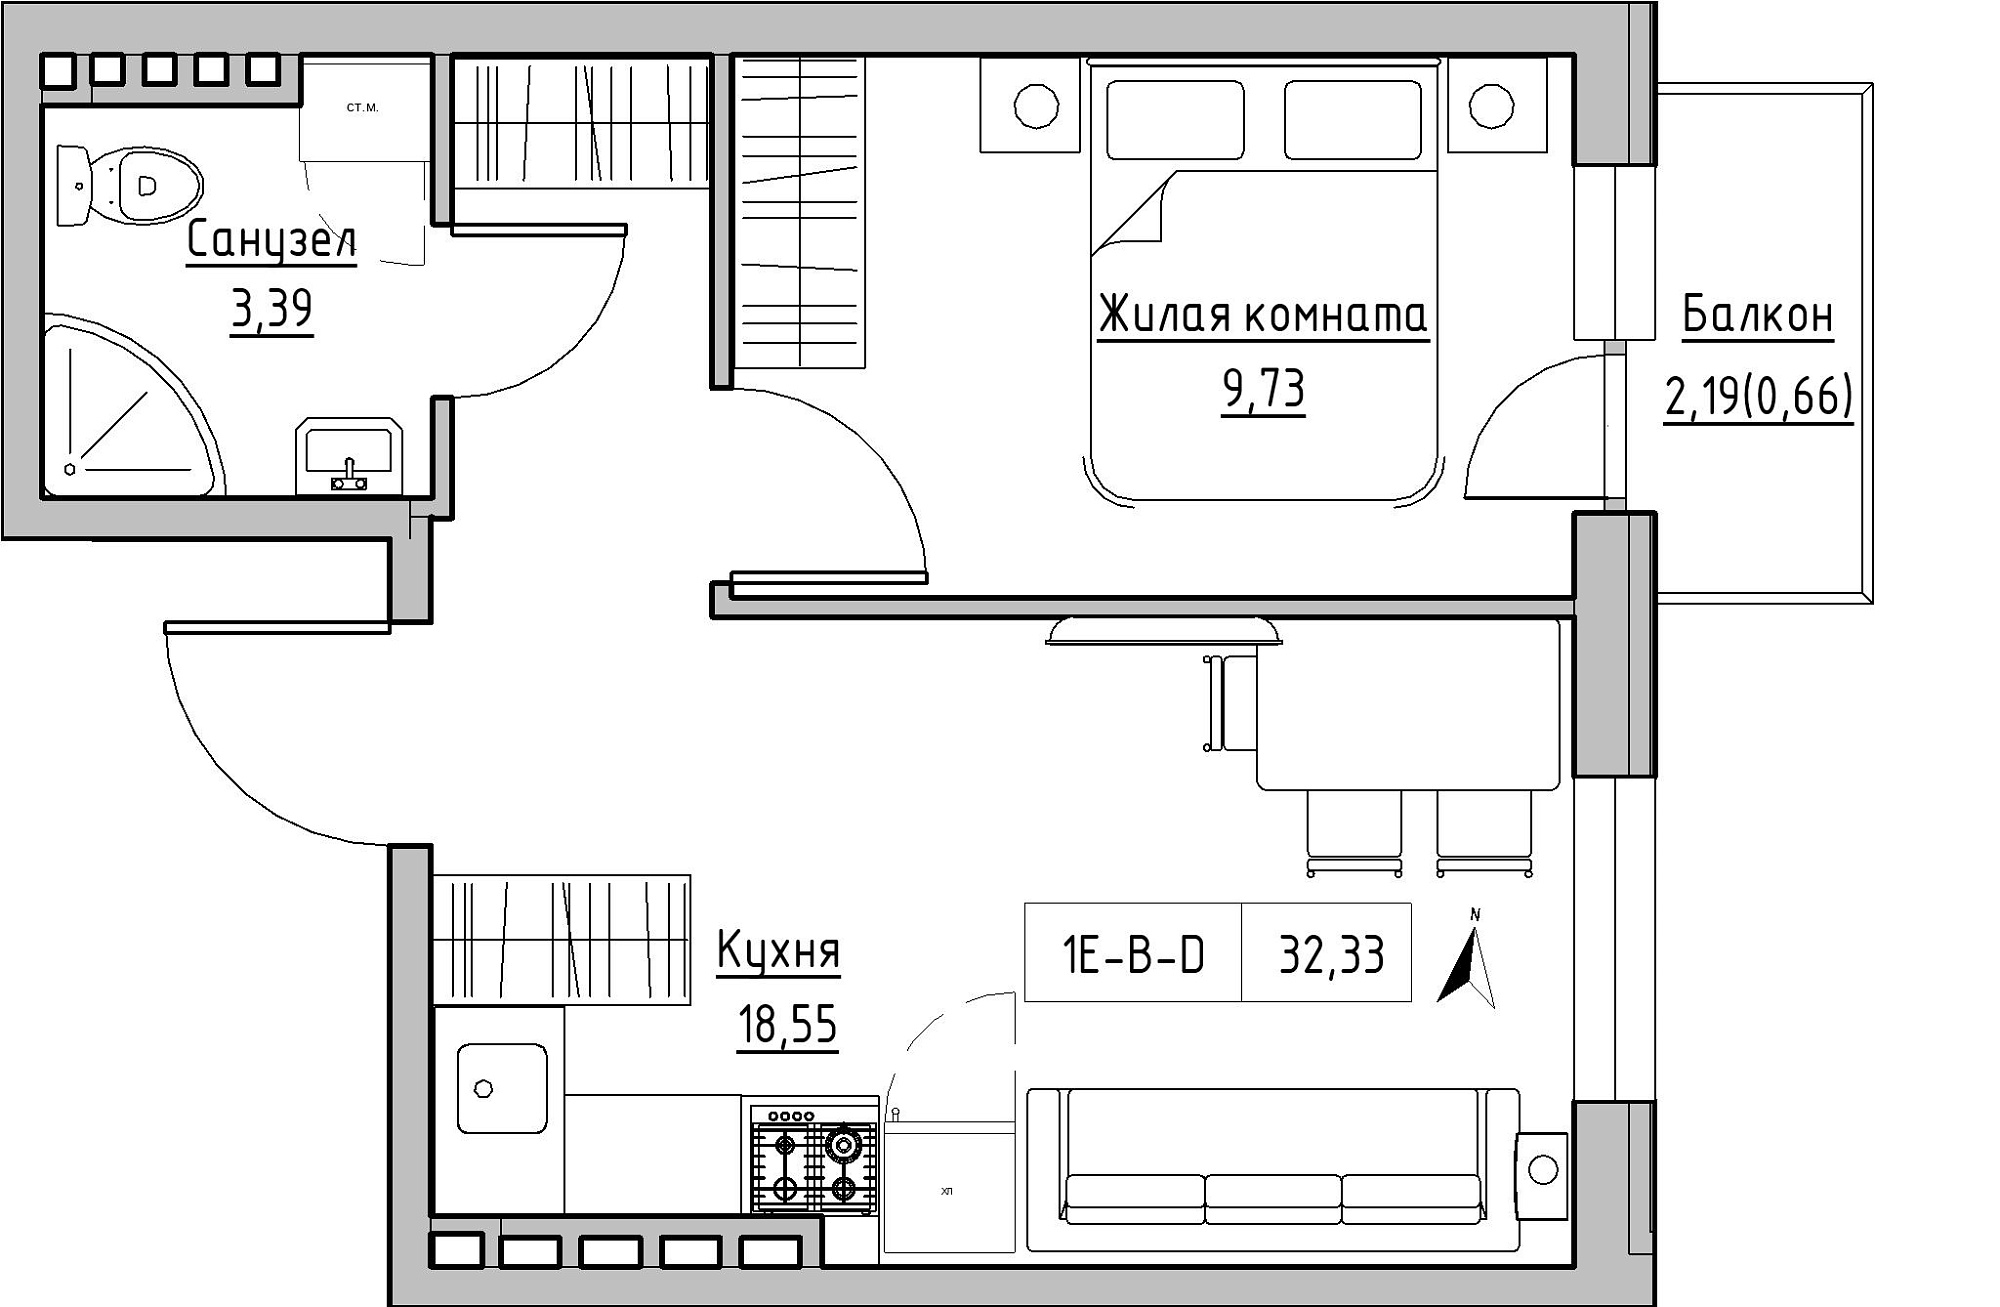 Планування 1-к квартира площею 32.33м2, KS-024-04/0015.